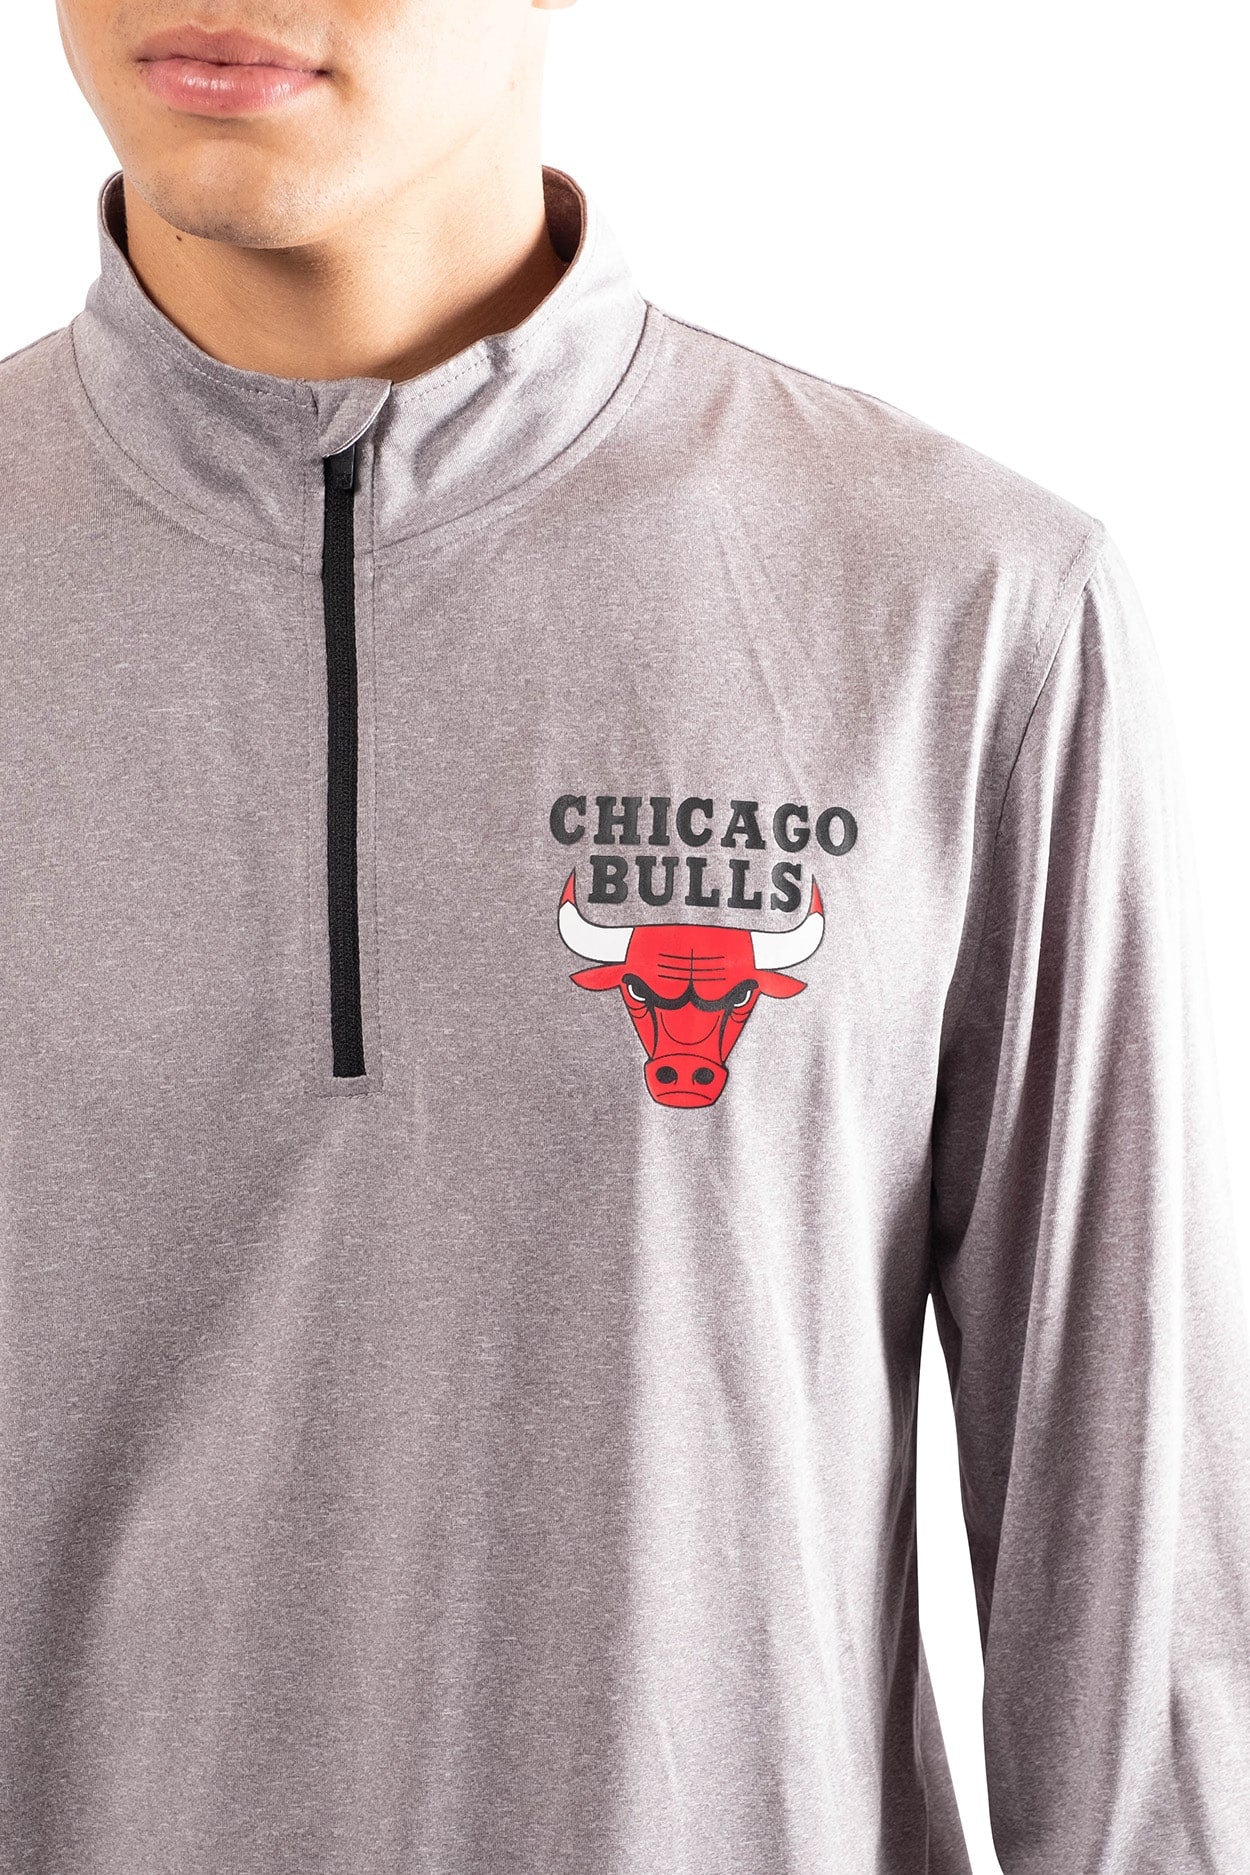 NBA Chicago Bulls Men's Quarter Zip Quick Dry Tee|Chicago Bulls